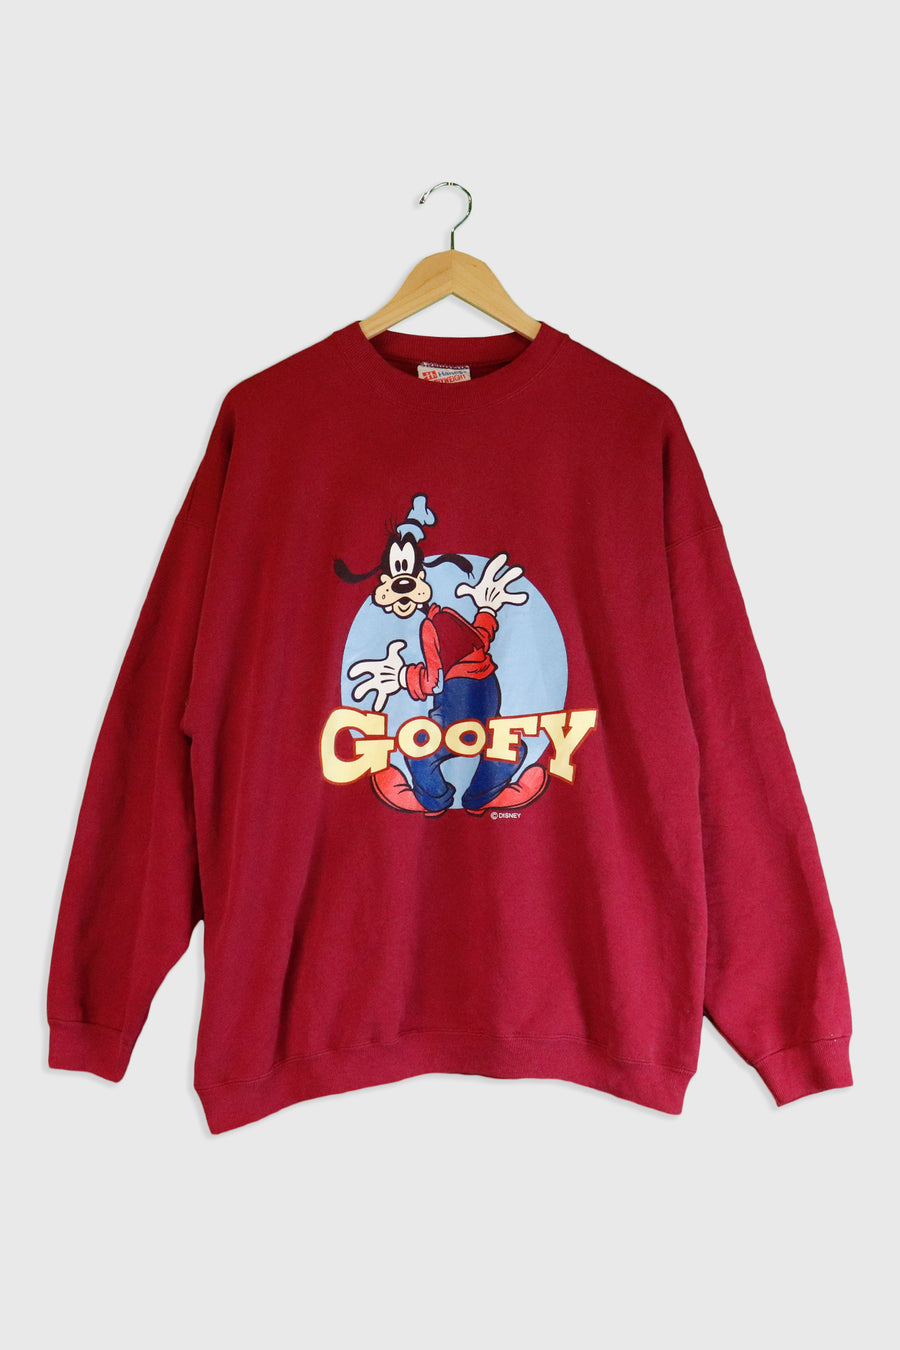 Vintage Disney Goofy Sweatshirt Sz XL